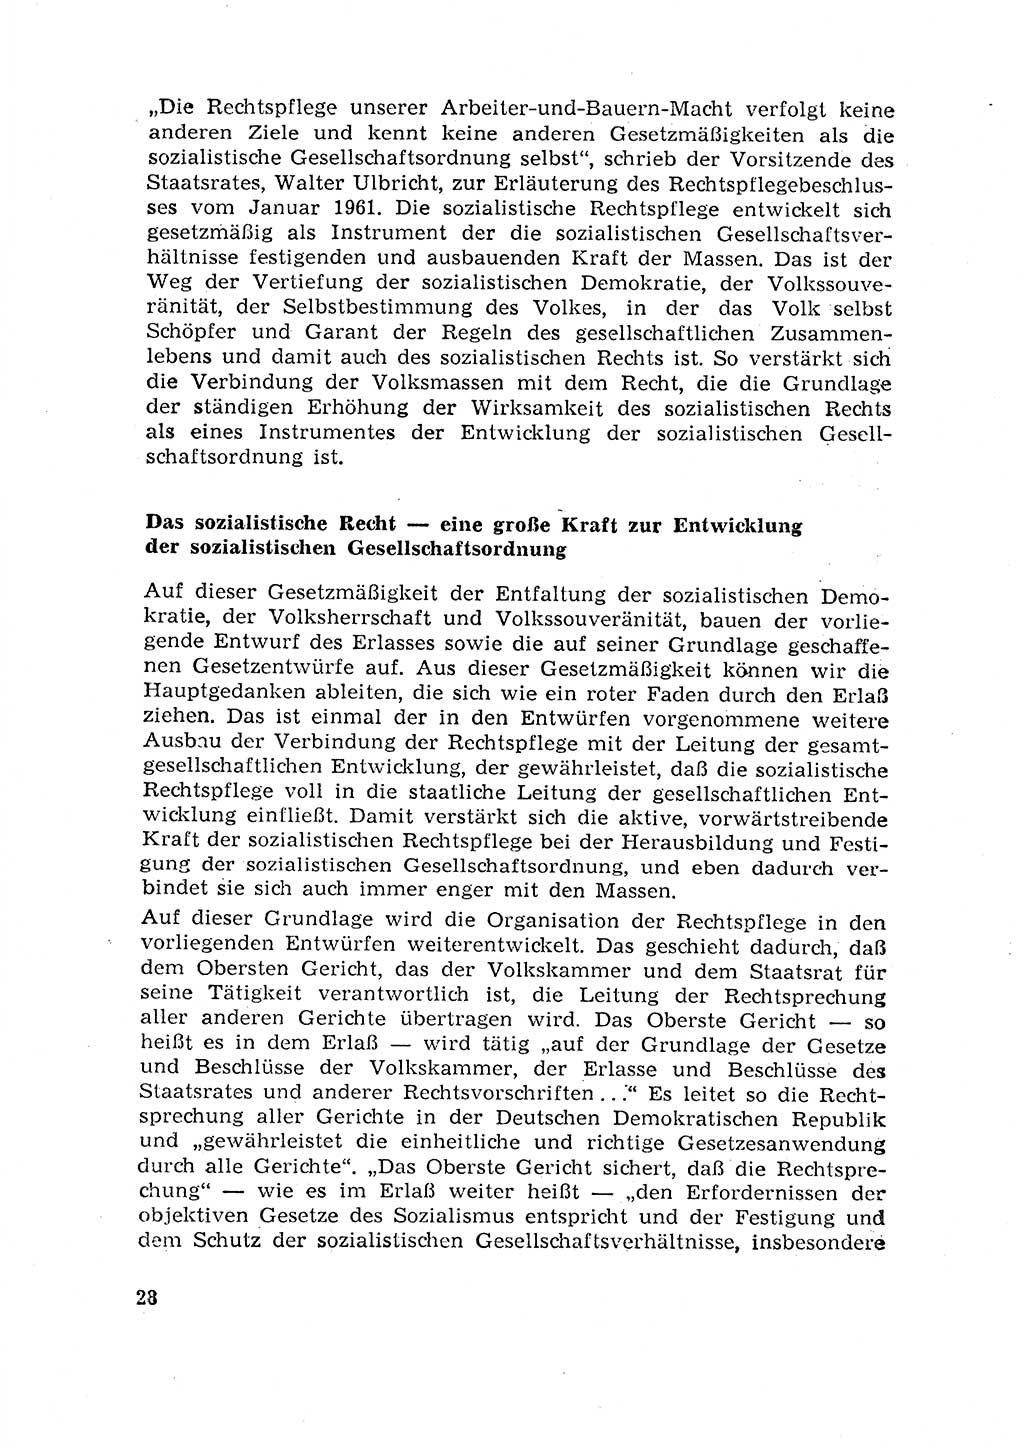 Rechtspflegeerlaß [Deutsche Demokratische Republik (DDR)] 1963, Seite 28 (R.-Pfl.-Erl. DDR 1963, S. 28)